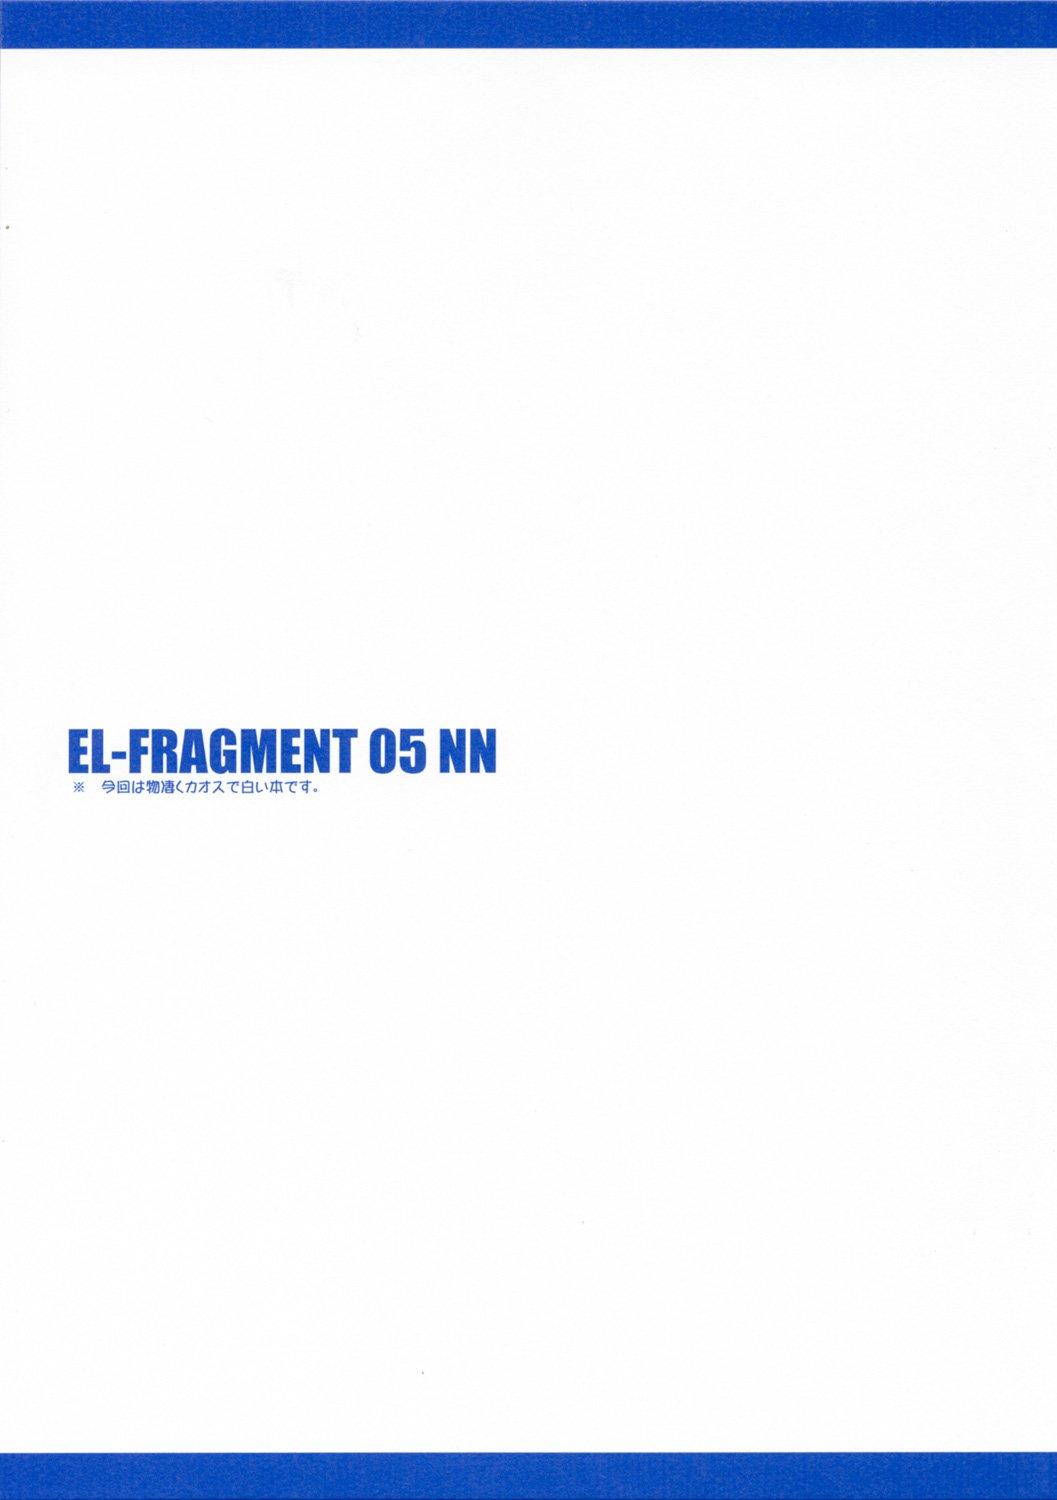 EL-FRAGMENT 05 NN 1